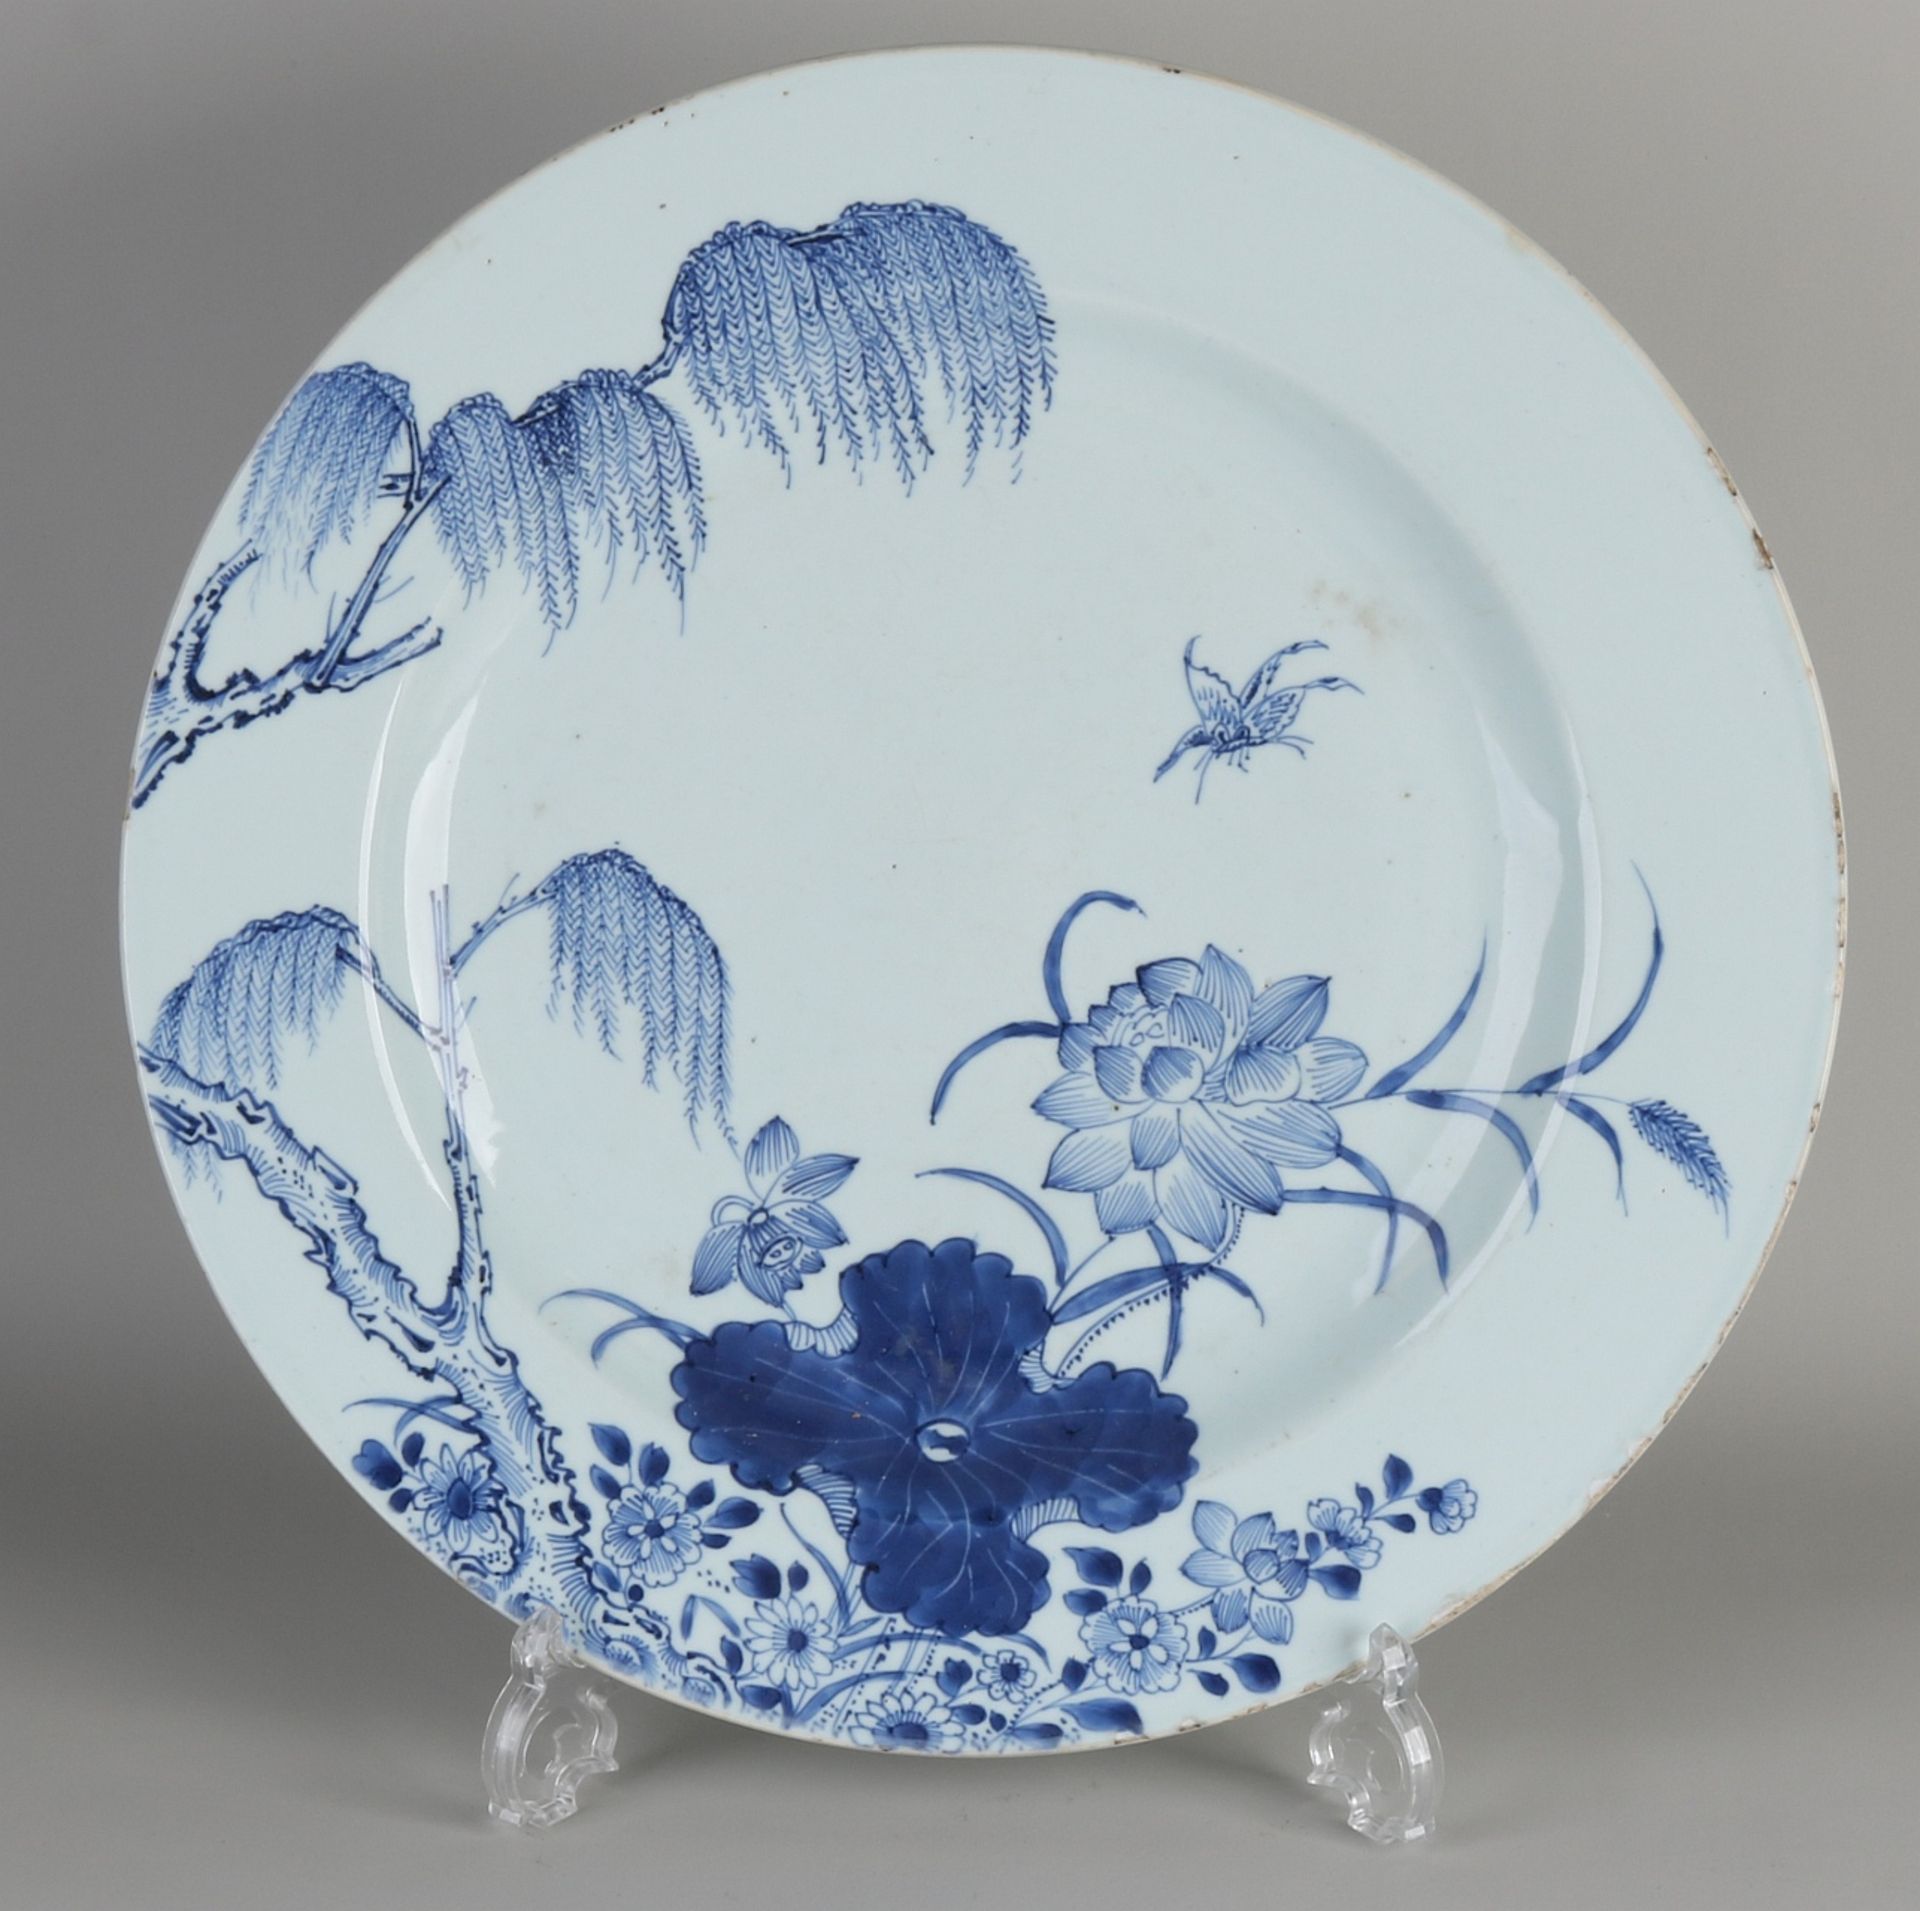 Sehr große chinesische Porzellanschale aus dem 18. Jahrhundert mit Garten- / Schmetterlingsdekorat